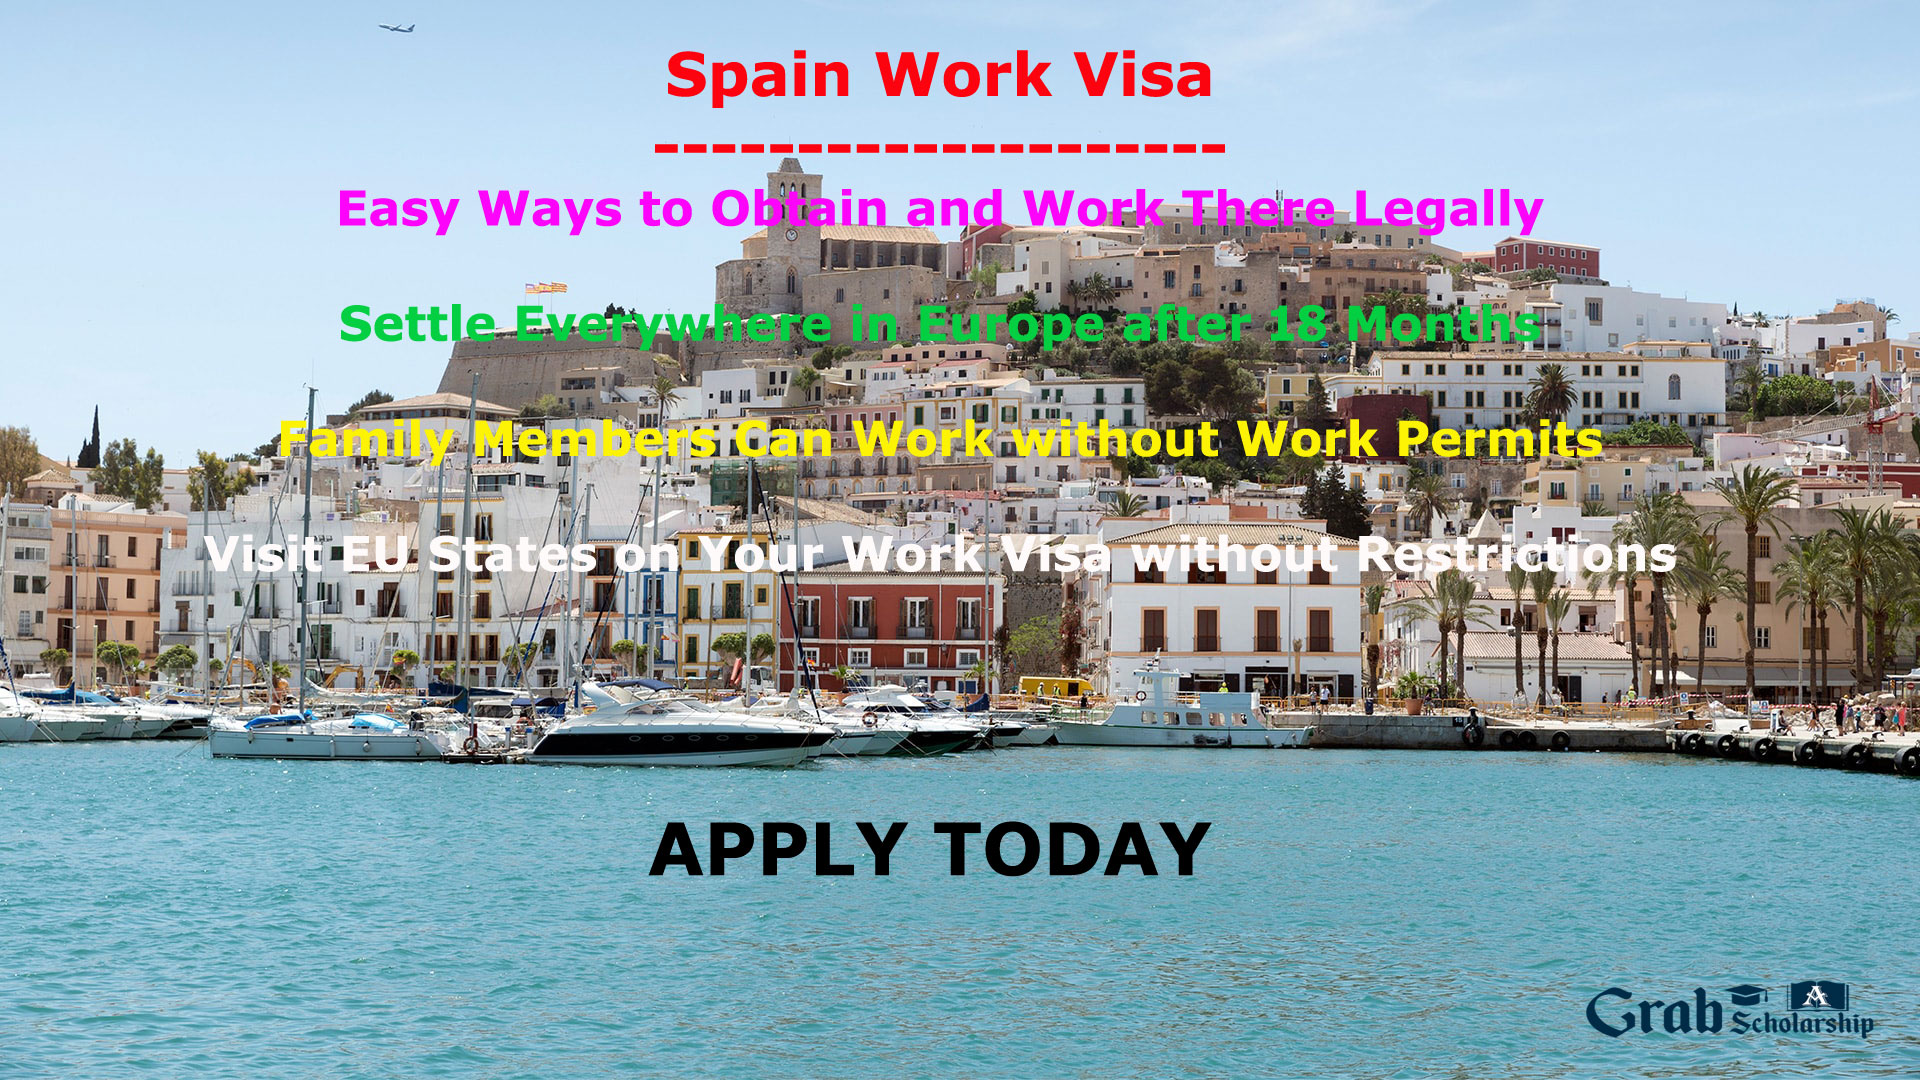 Spain work visa